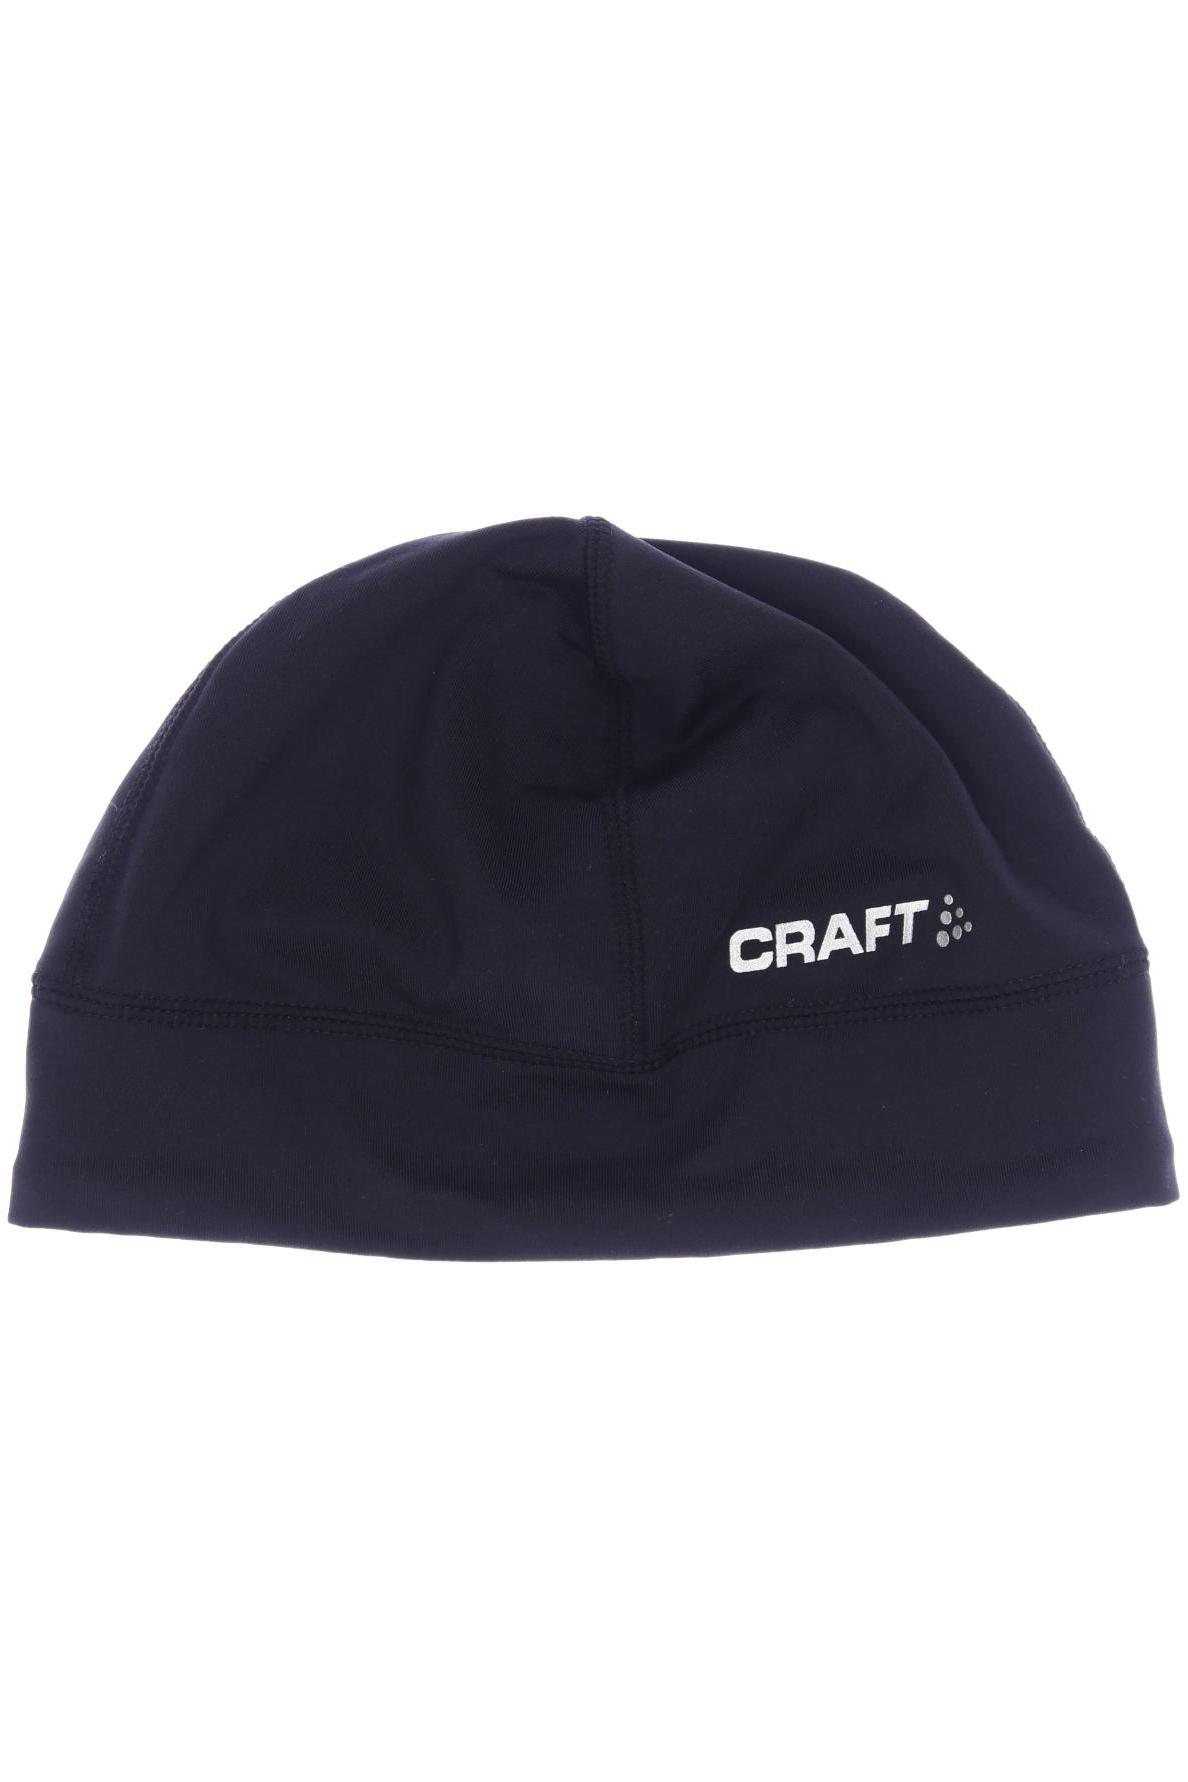 Craft Damen Hut/Mütze, schwarz von Craft